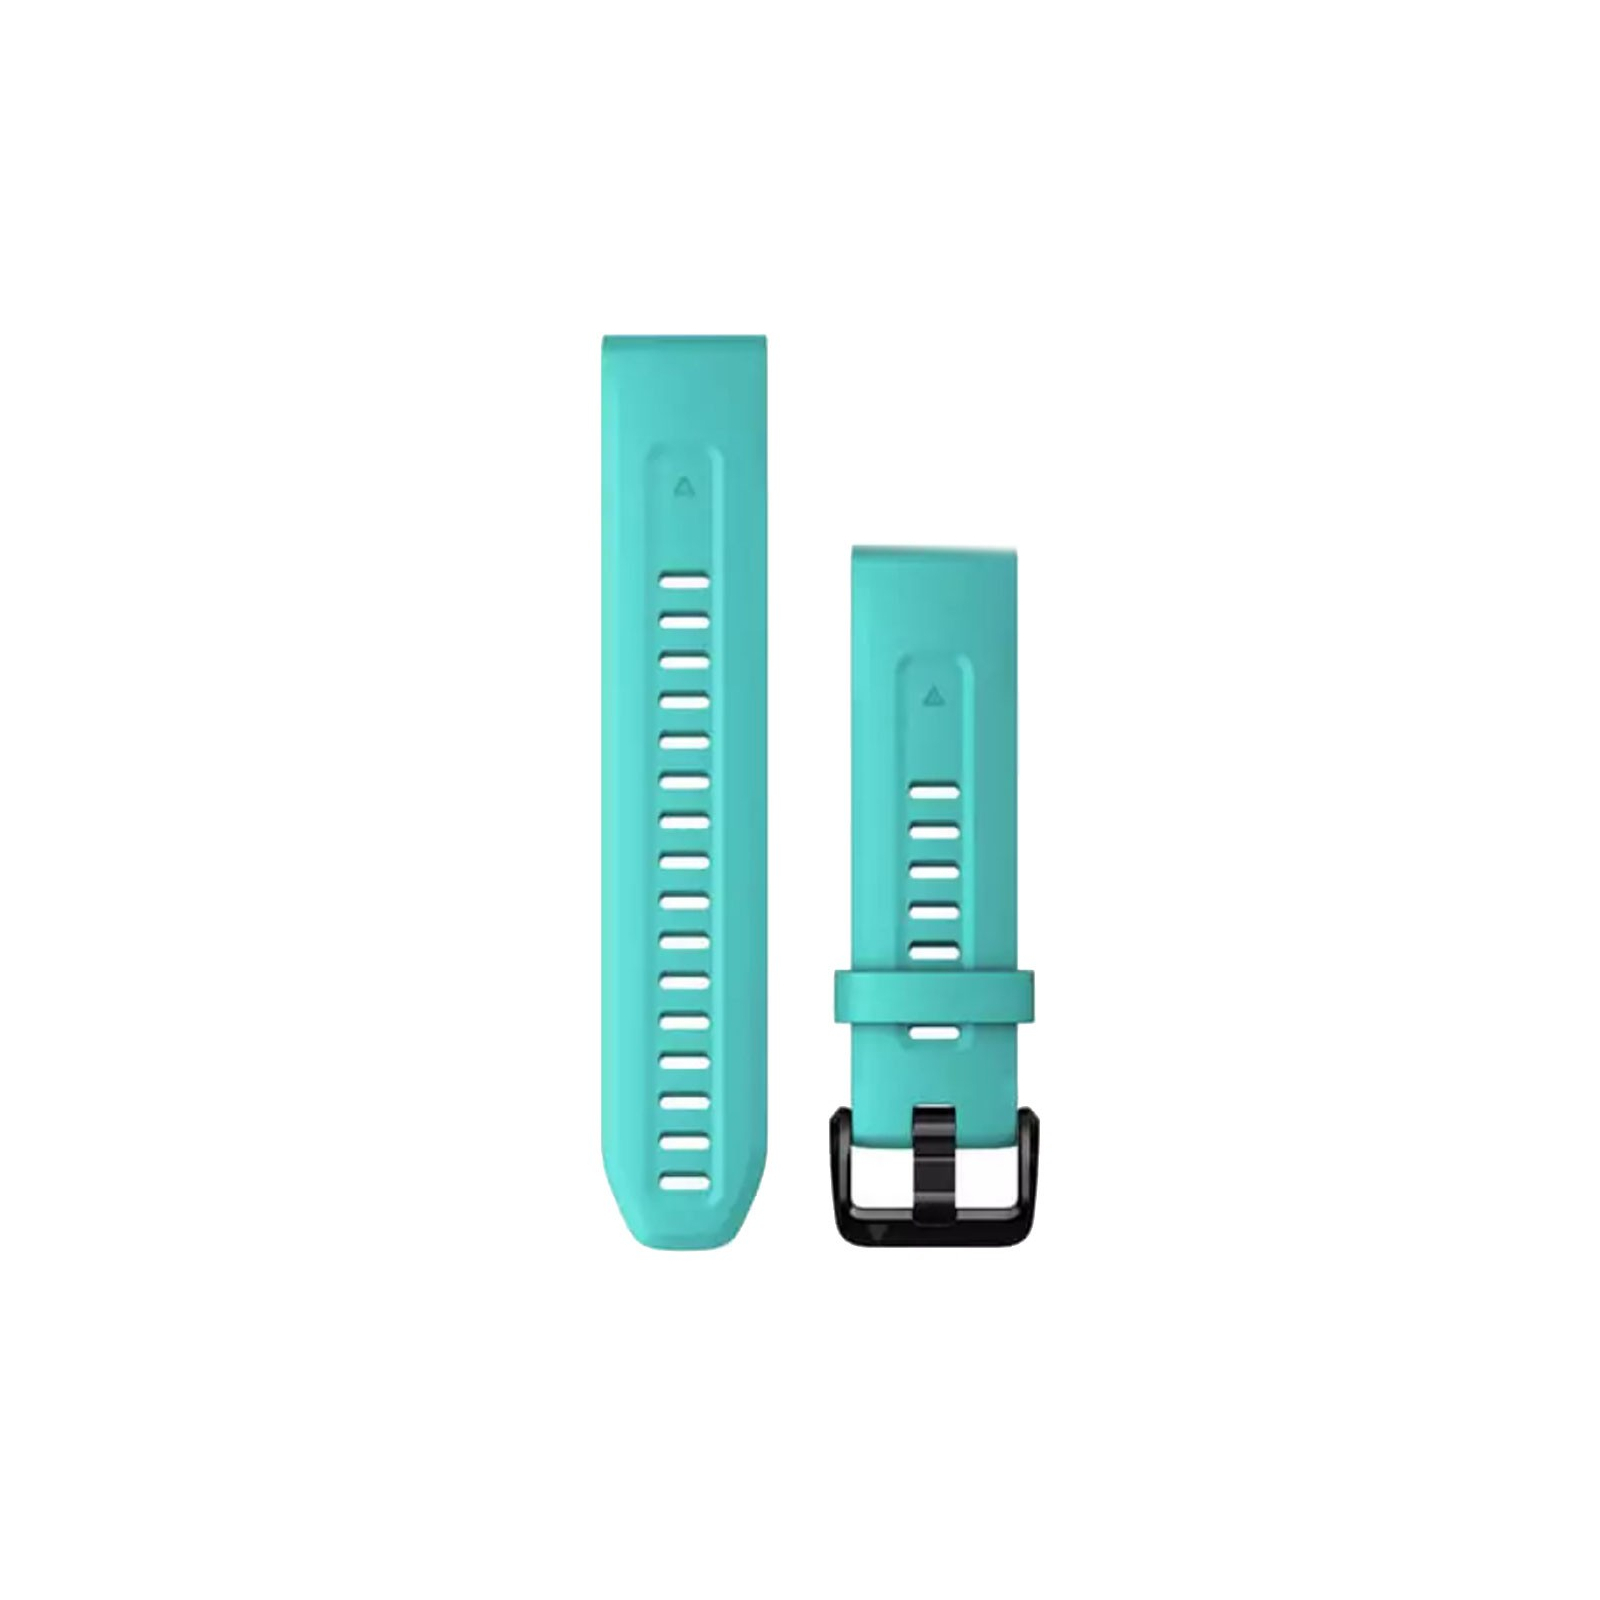 Ремешок для смарт-часов Garmin fenix 7S, 20mm QuickFit Aqua Silicone (010-13102-05)